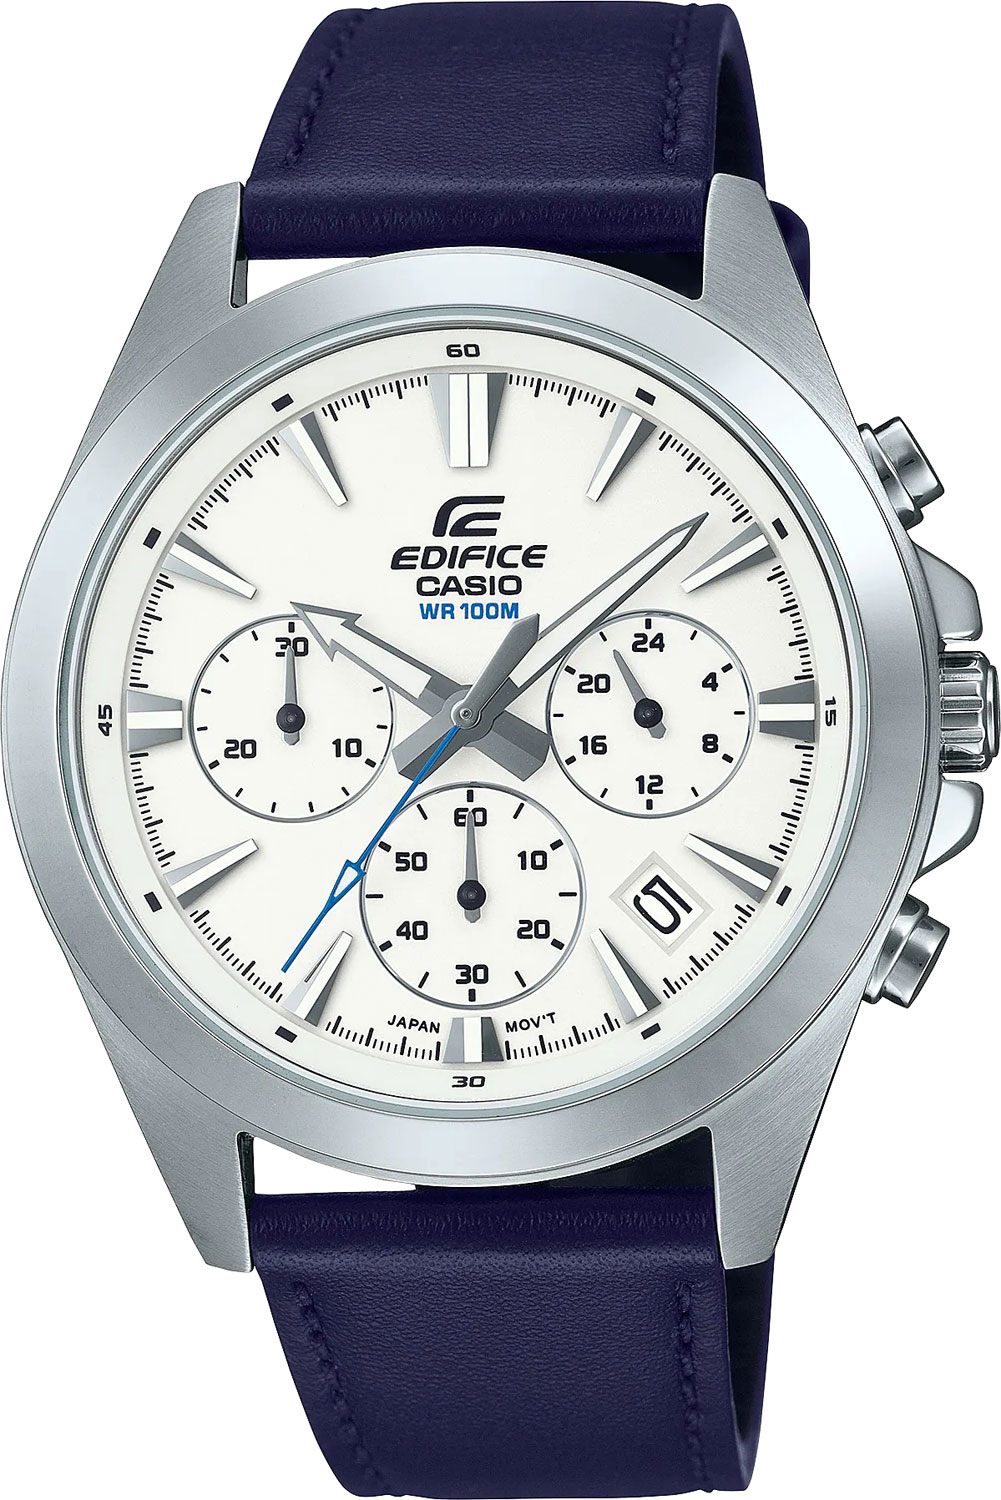 Наручные часы Casio Edifice EFV-630L-7A — купить в интернет-магазине AllTime.ru по лучшей цене, фото, характеристики, инструкция, описание